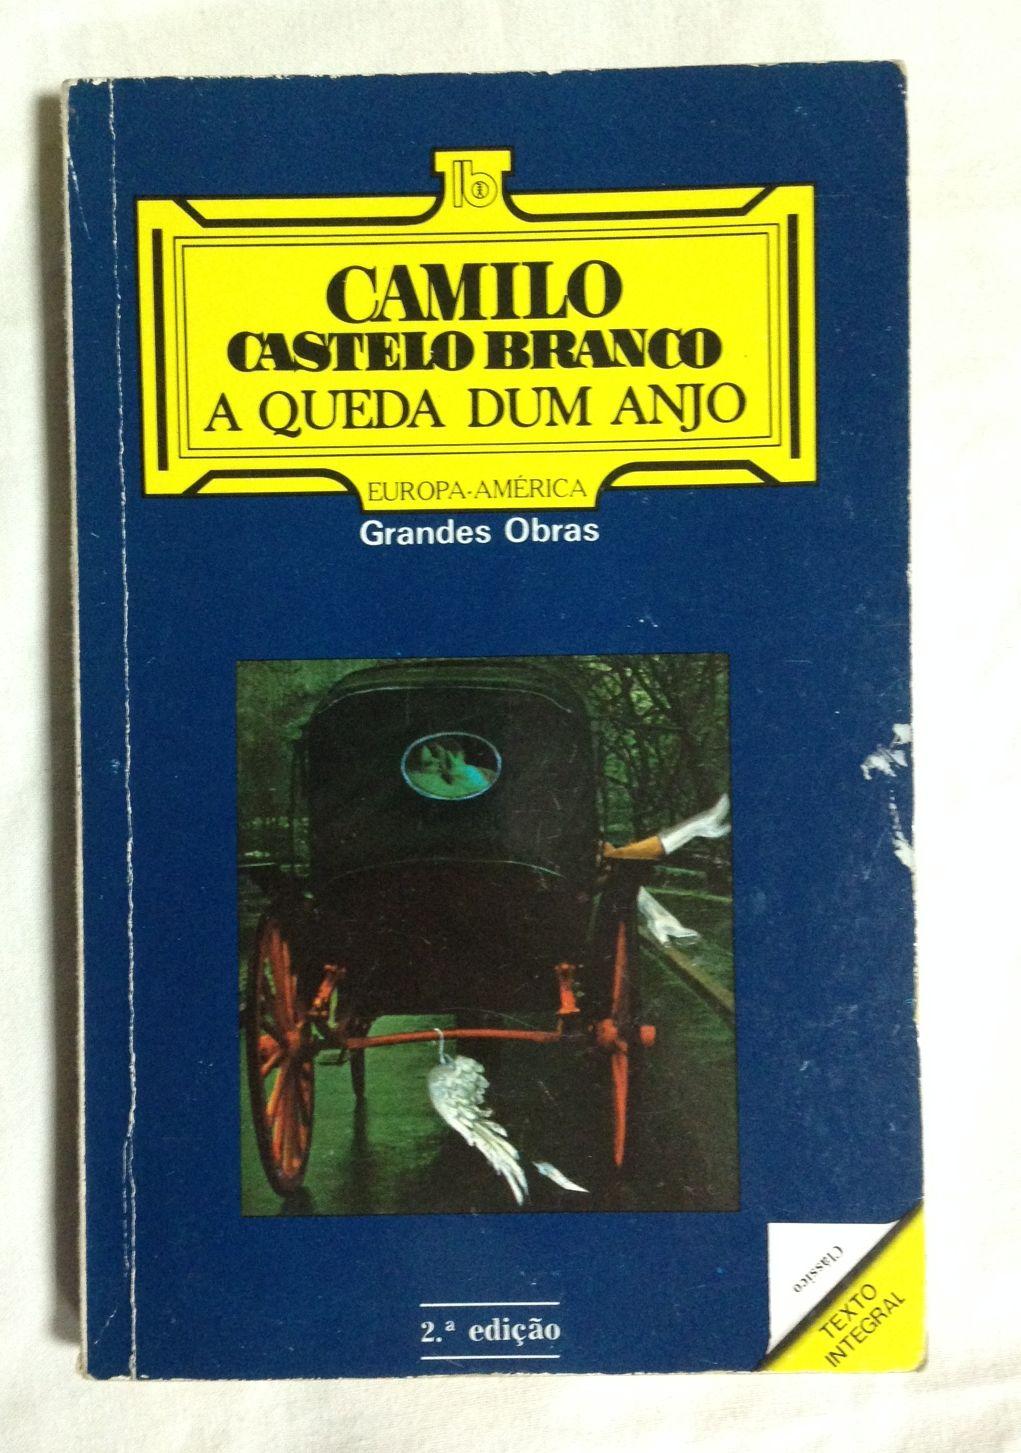 A QUEDA DUM ANJO - CASTELO BRANCO, Camilo